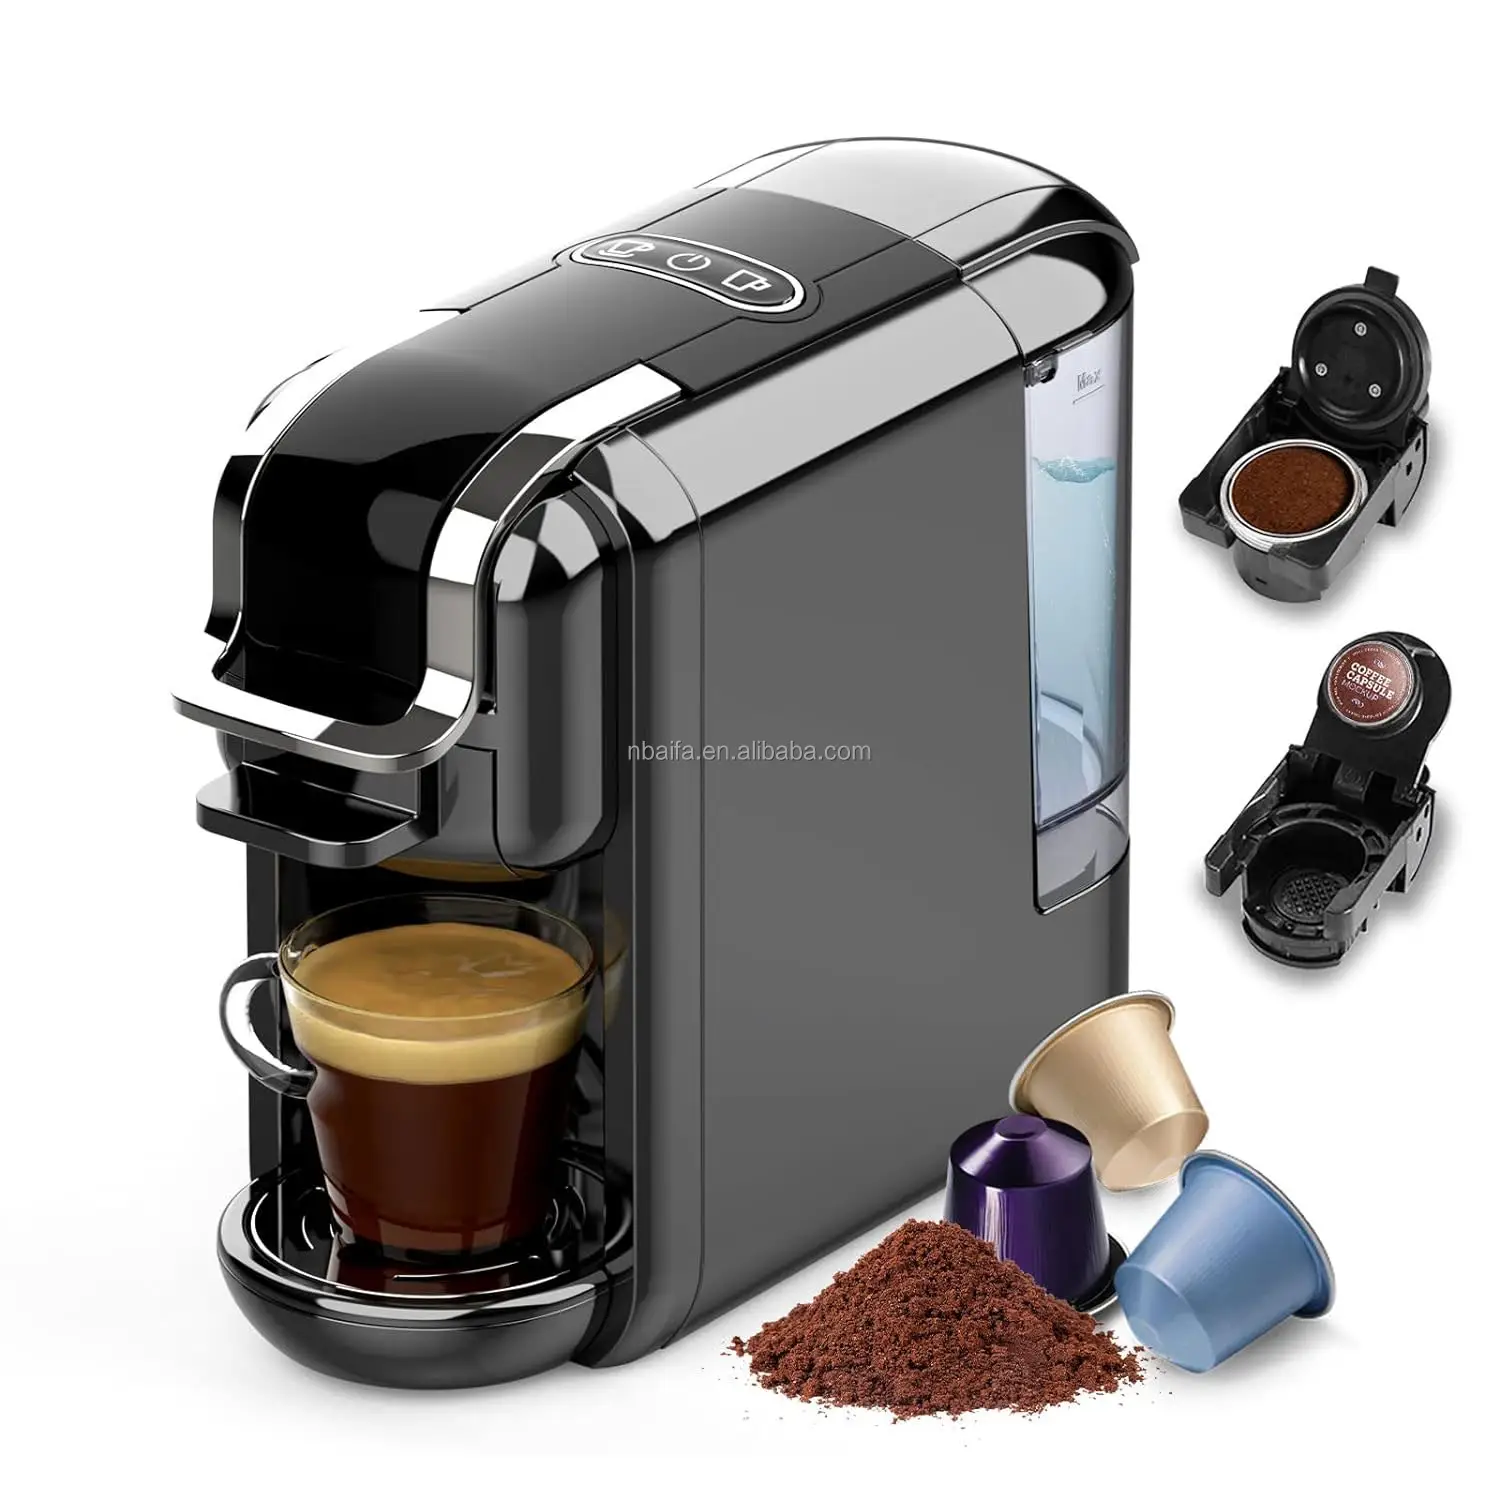 Aifa viên nang bột cà phê 2 trong 1 máy pha cà phê 20 thanh viên nang tương thích viên nang/bột cà phê hệ thống sưởi ấm nhanh